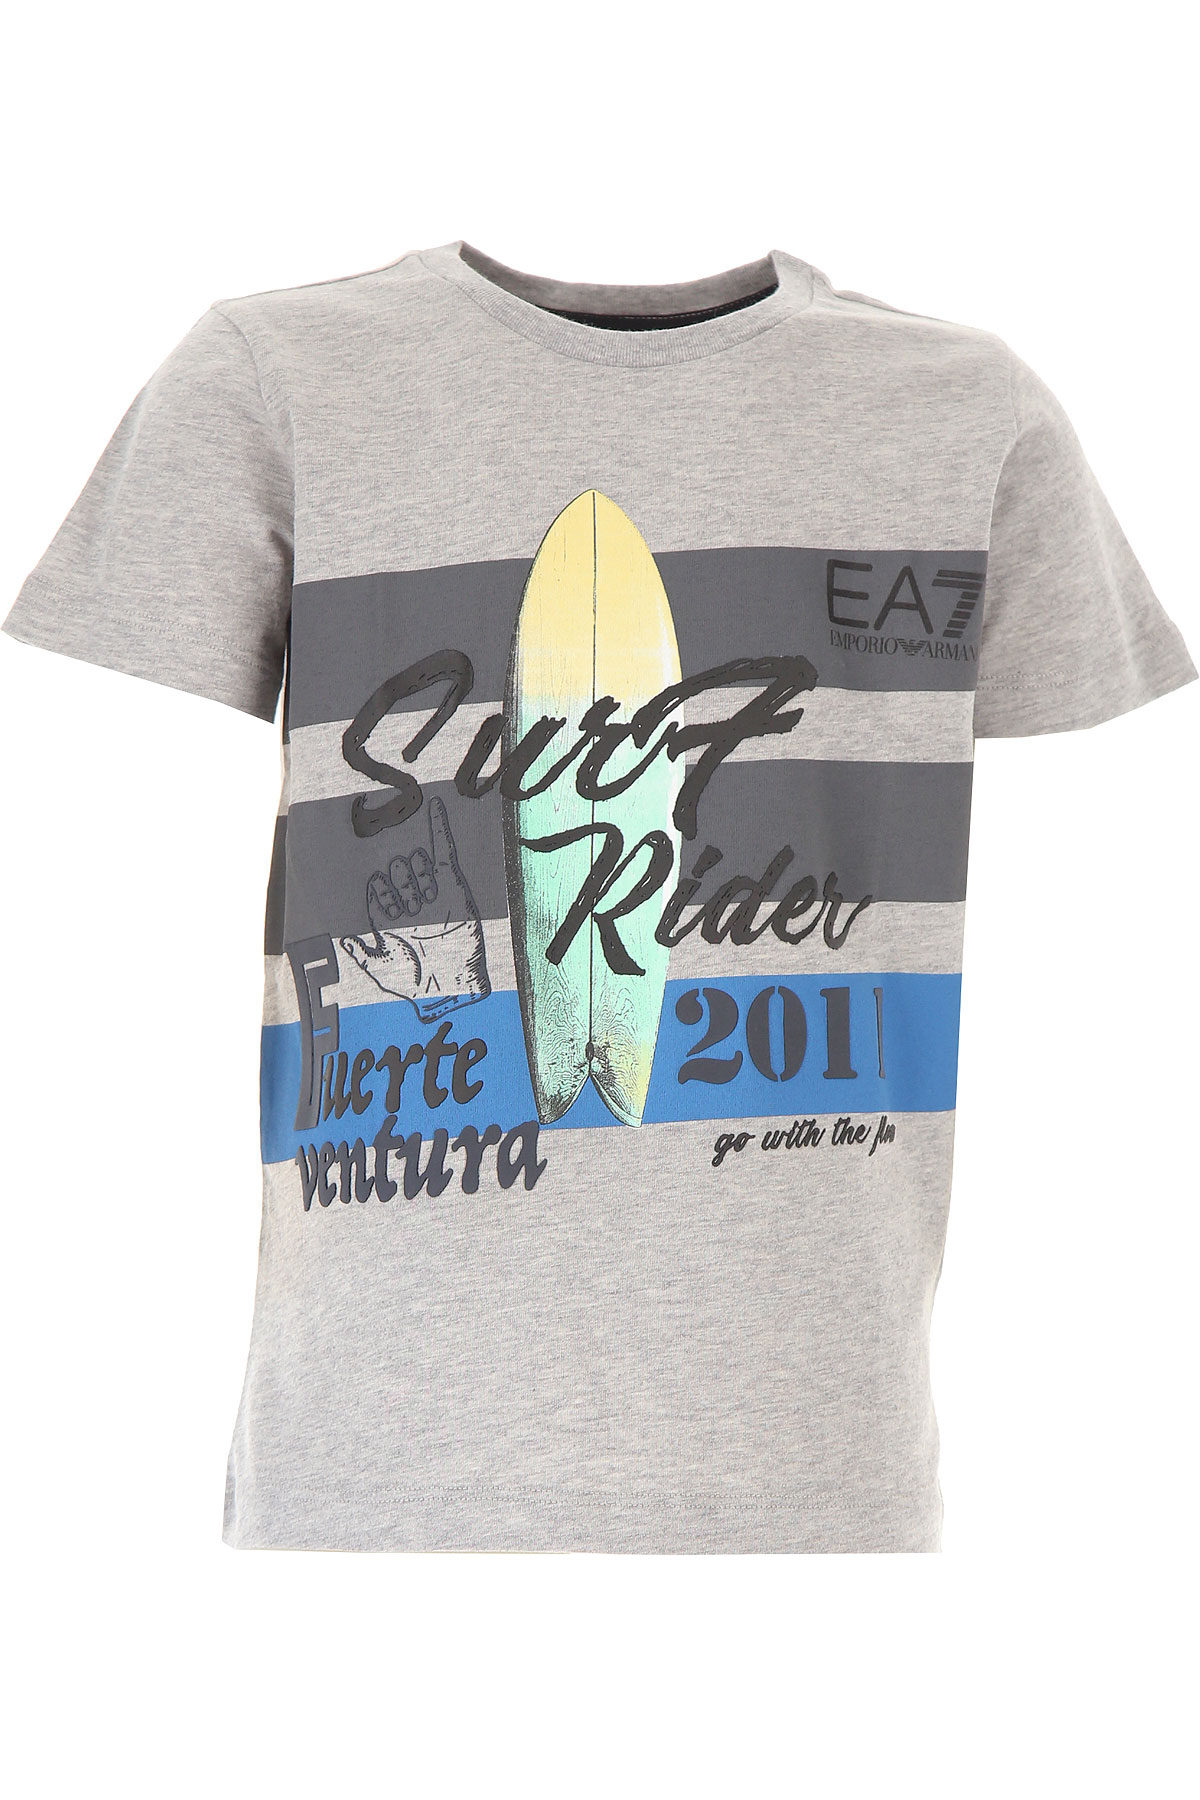 Emporio Armani Kinder T-Shirt für Jungen Günstig im Outlet Sale, Grau, Baumwolle, 2017, 4Y 6Y 8Y